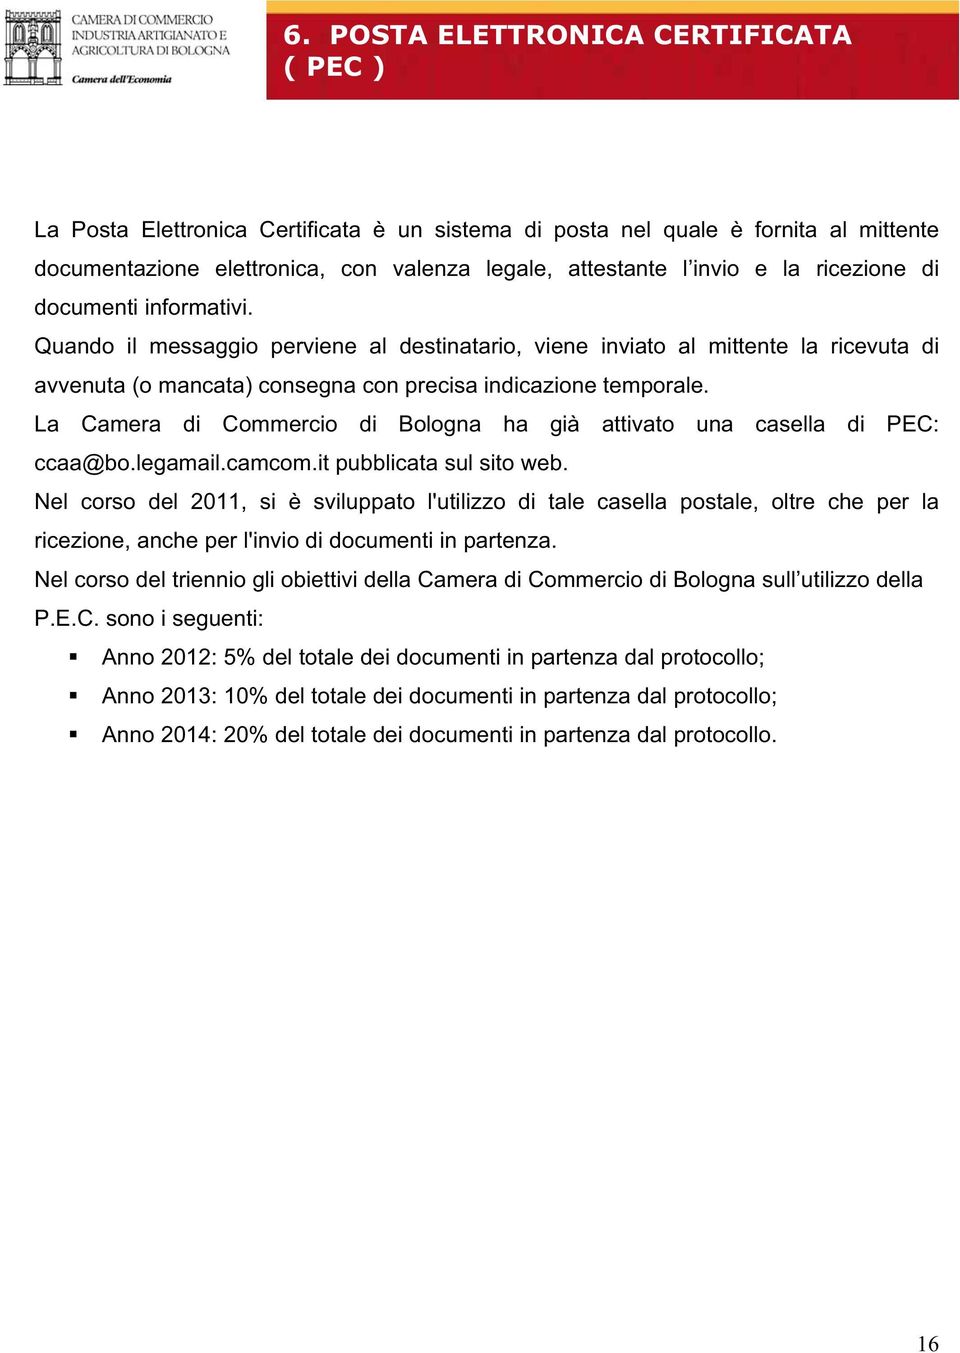 La Camera di Commercio di Bologna ha già attivato una casella di PEC: ccaa@bo.legamail.camcom.it pubblicata web.